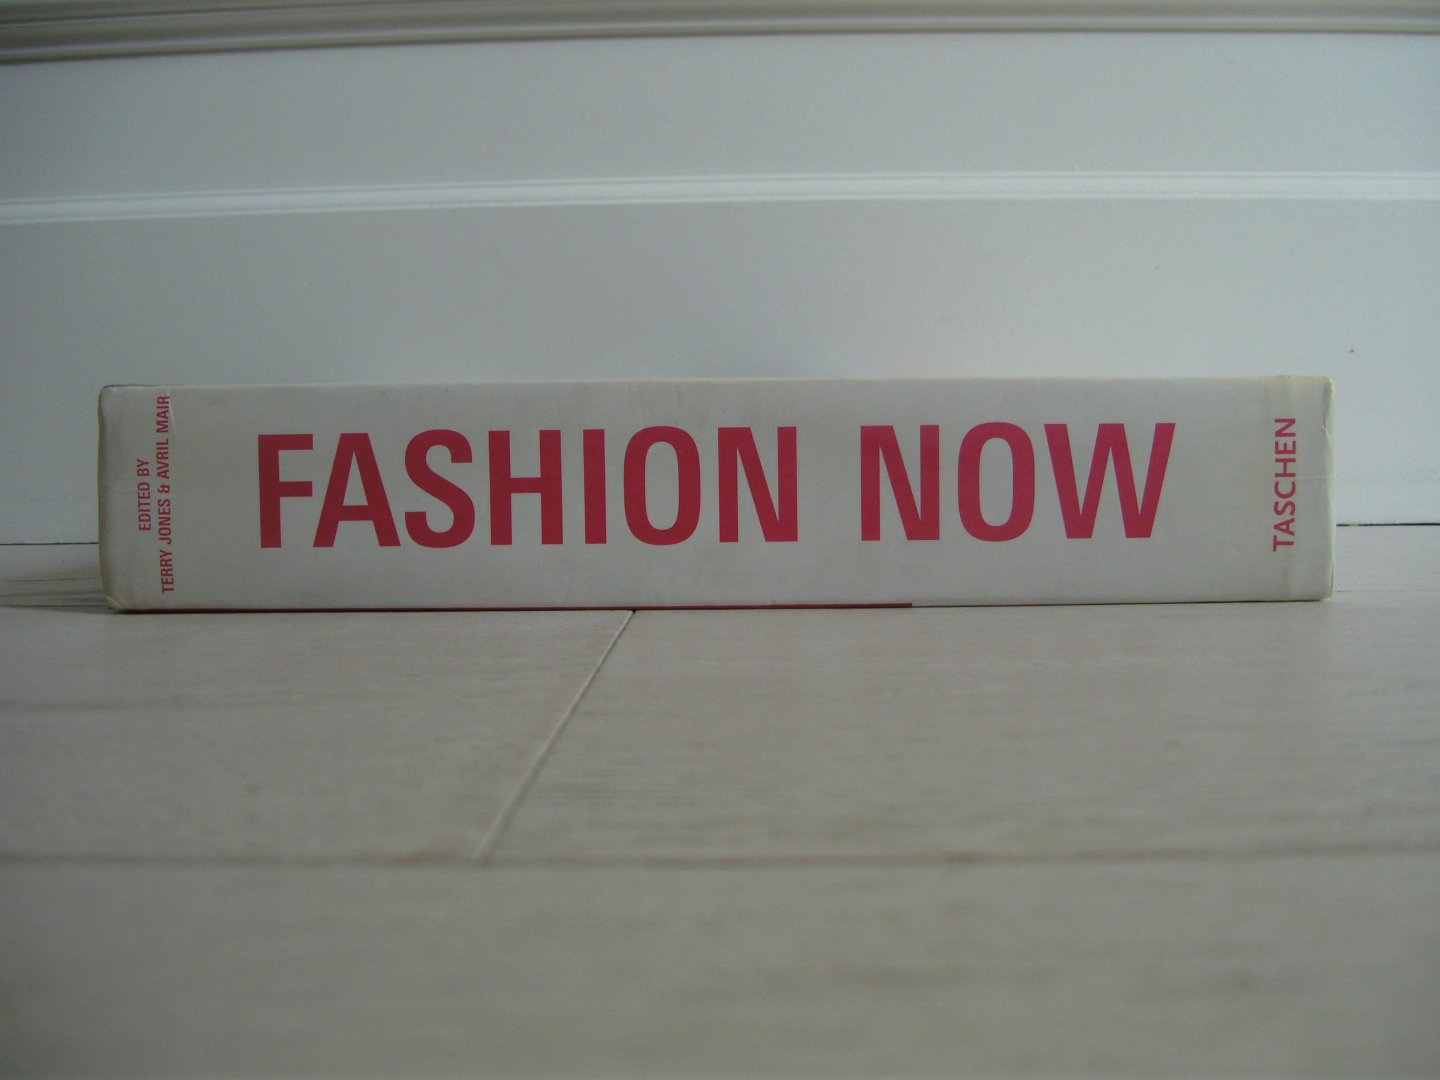 Jones Terry, James Anderson, Femke van Doorn - Fashion Now